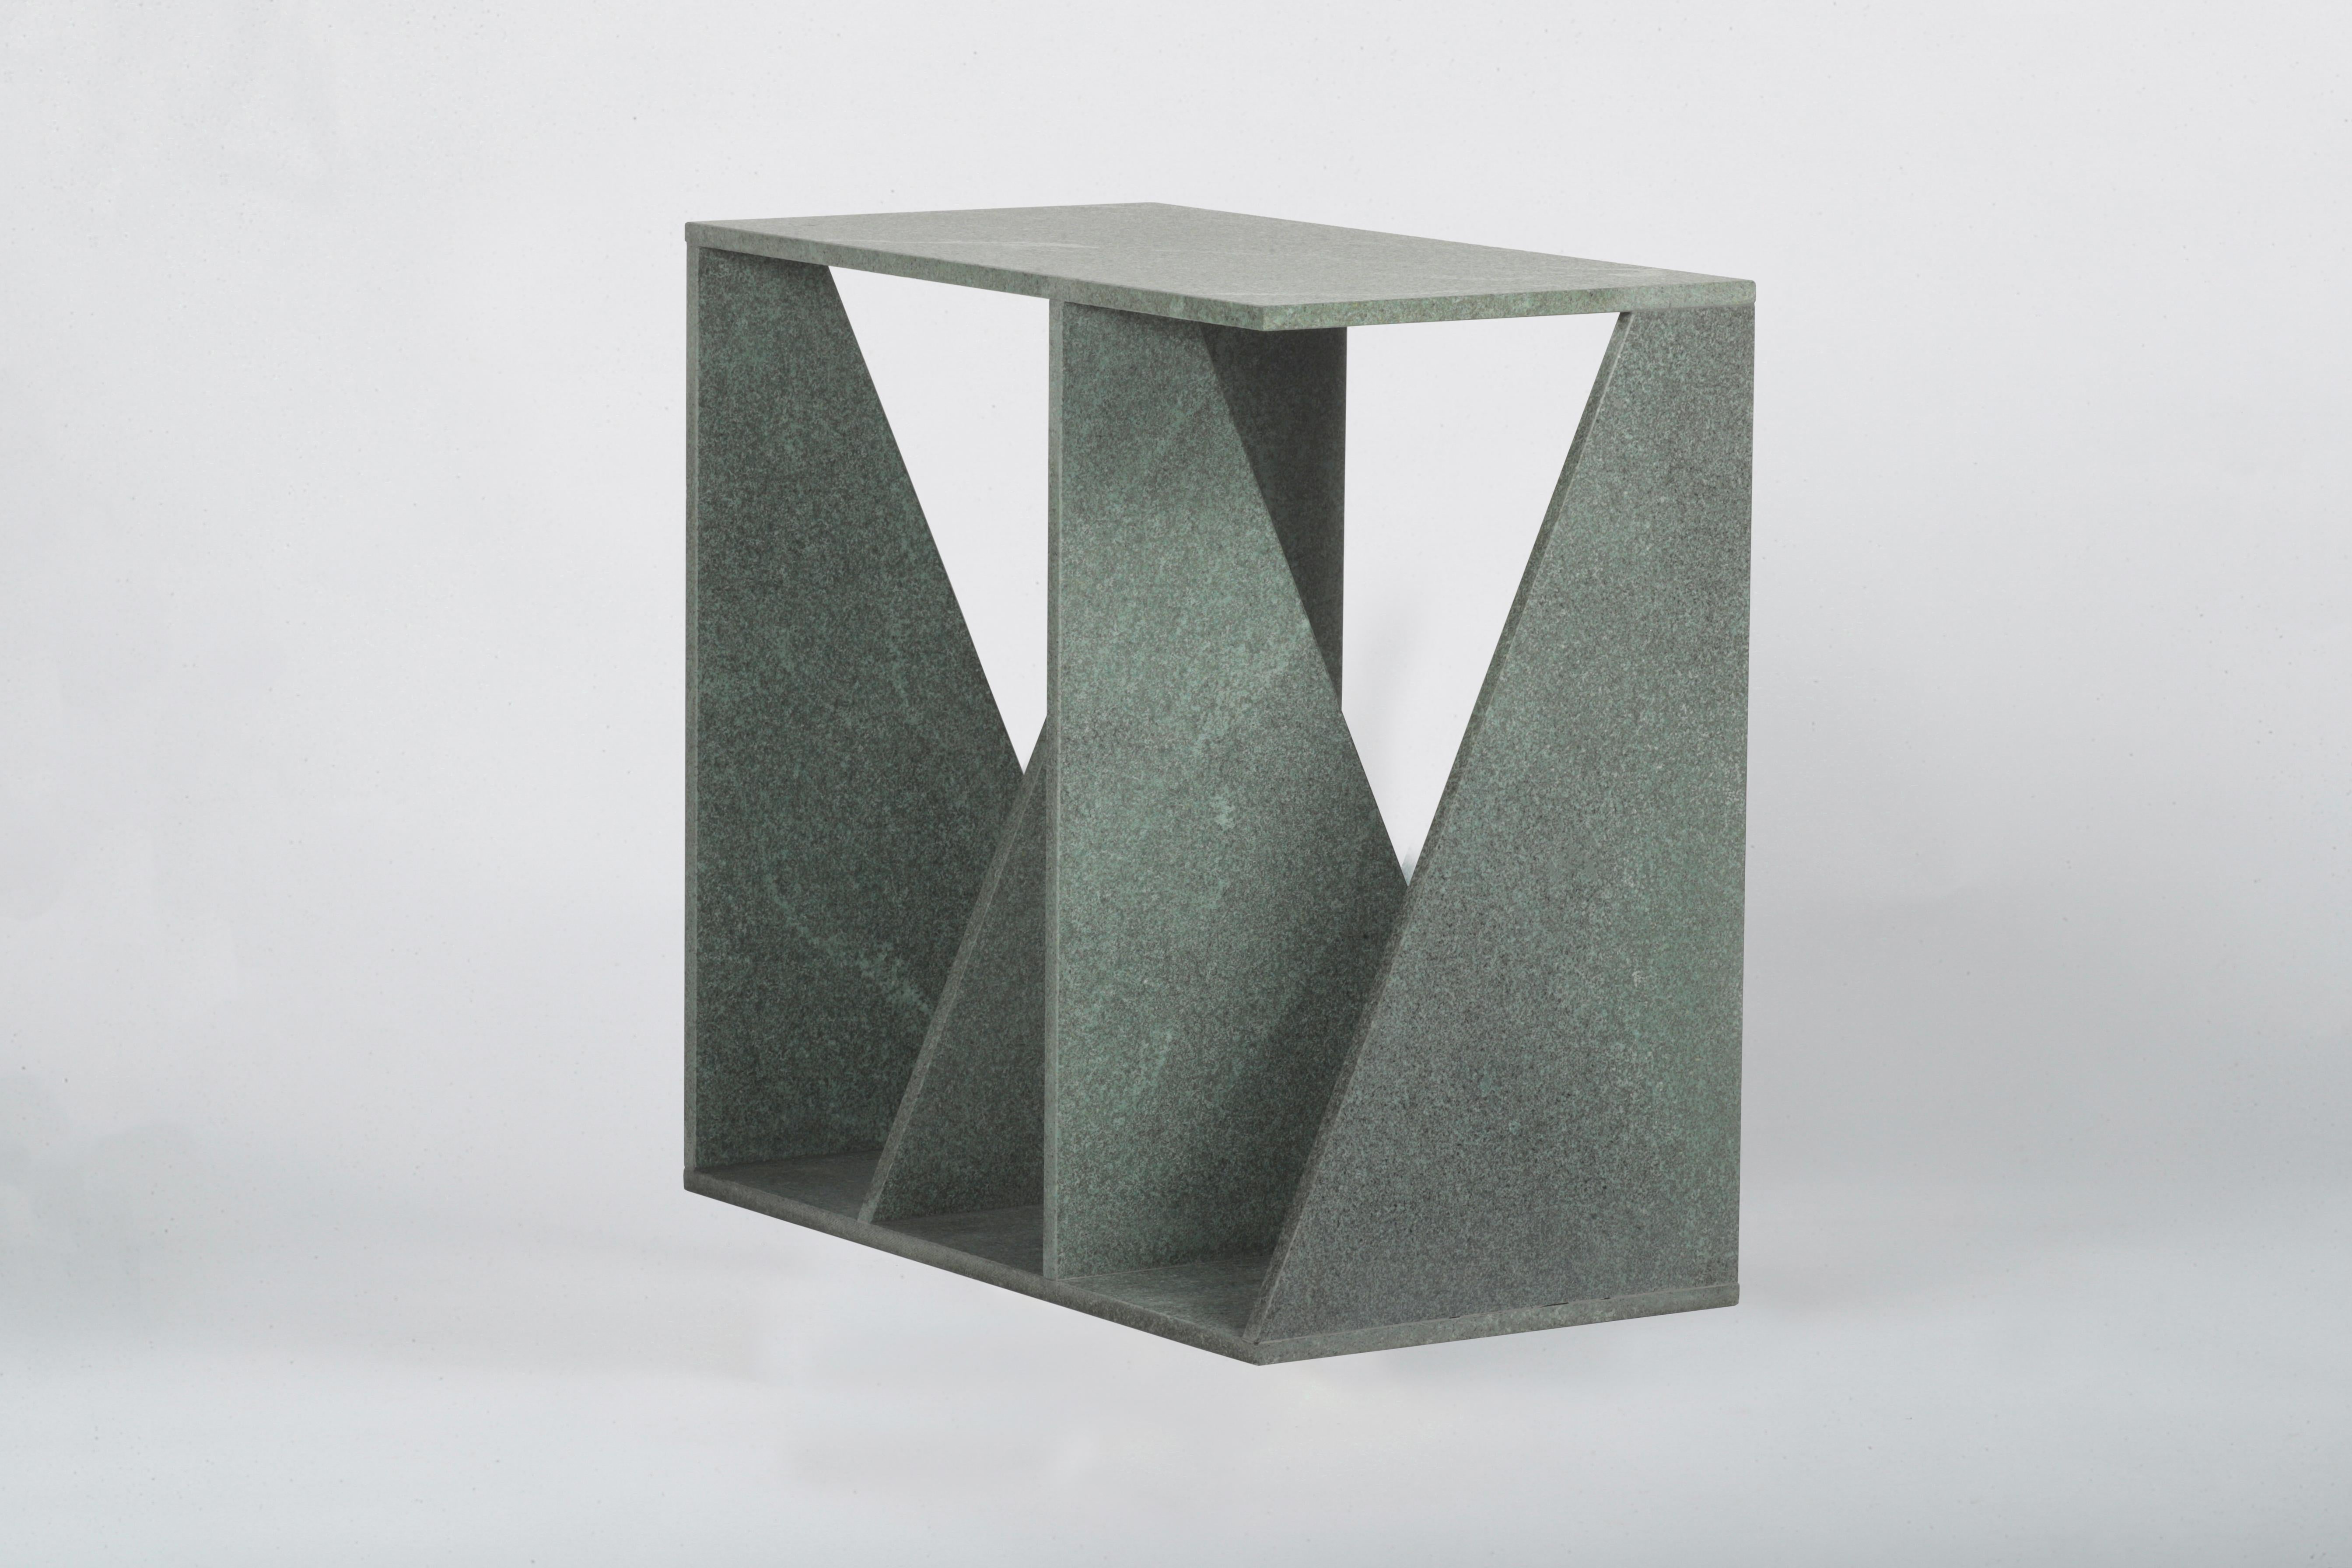 Les couches de pierre mènent à un but fonctionnel en créant un support pour une table d'appoint. La forme géométrique sculpturale de ce meuble permet un petit rangement grâce à son design. Envo est une table d'appoint qui peut également être